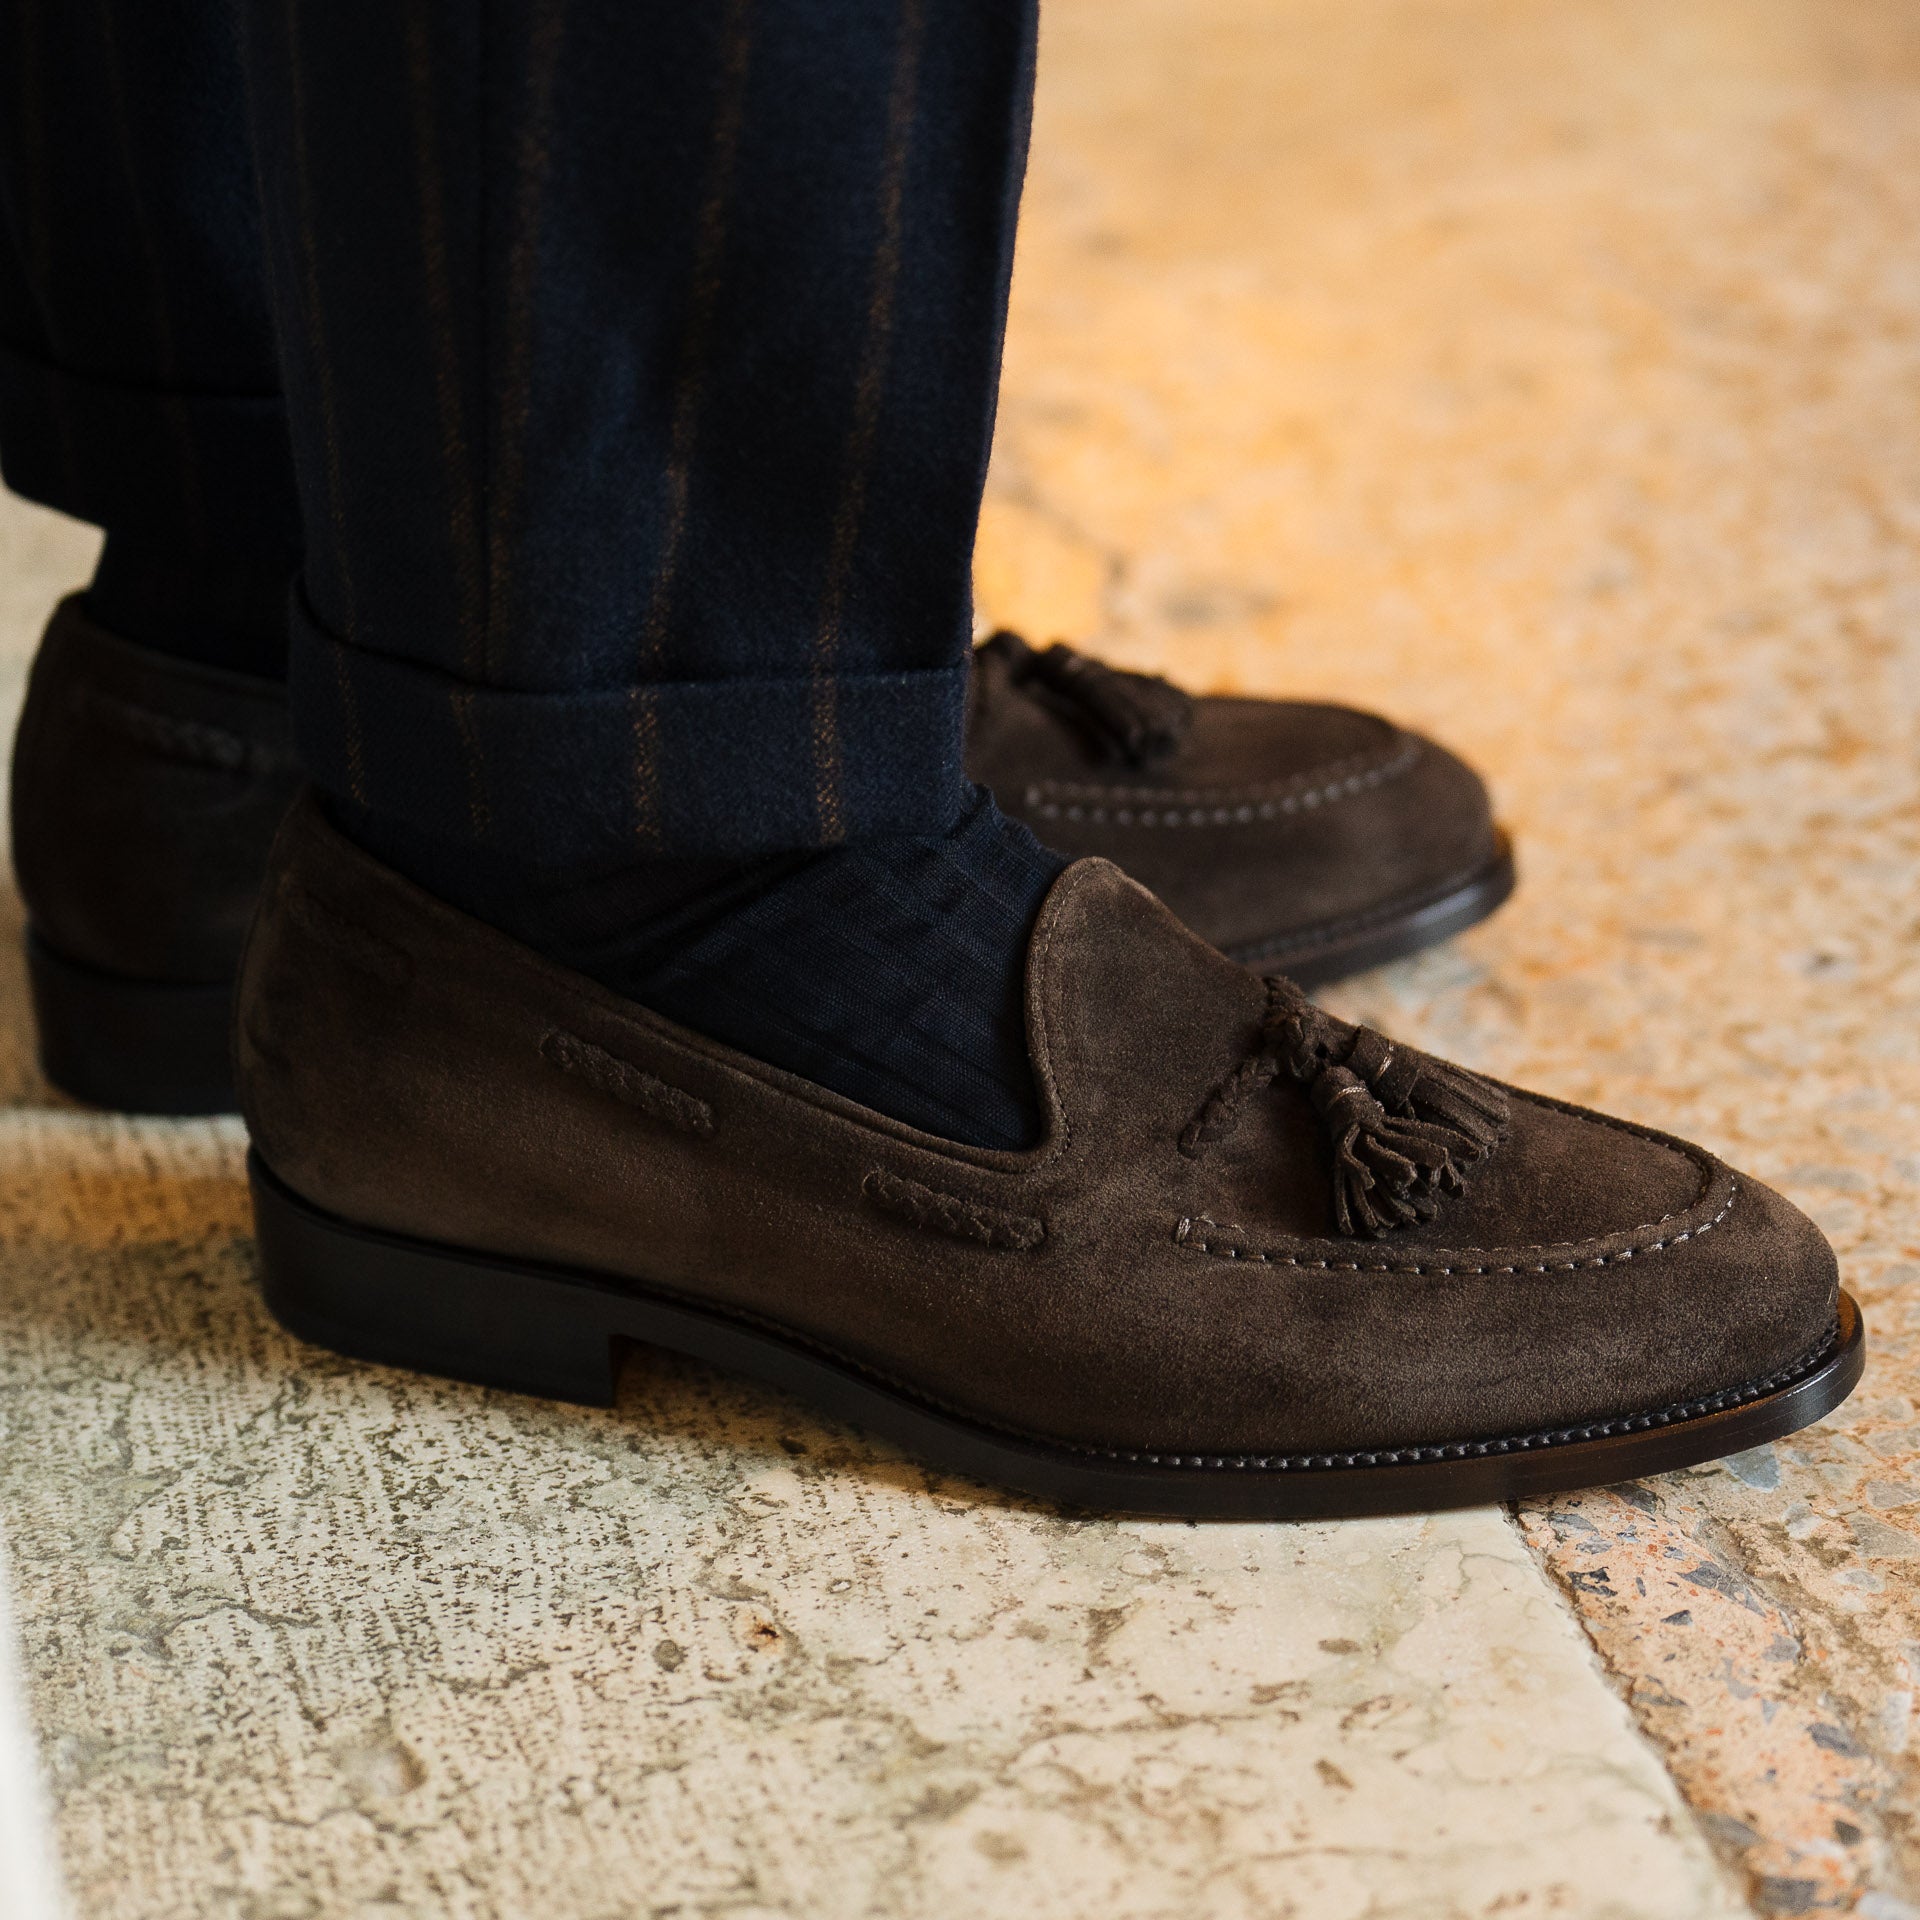 Beltran Men's Loafer Shoes  Leather shoes men, Loafers men, Suede leather  shoes